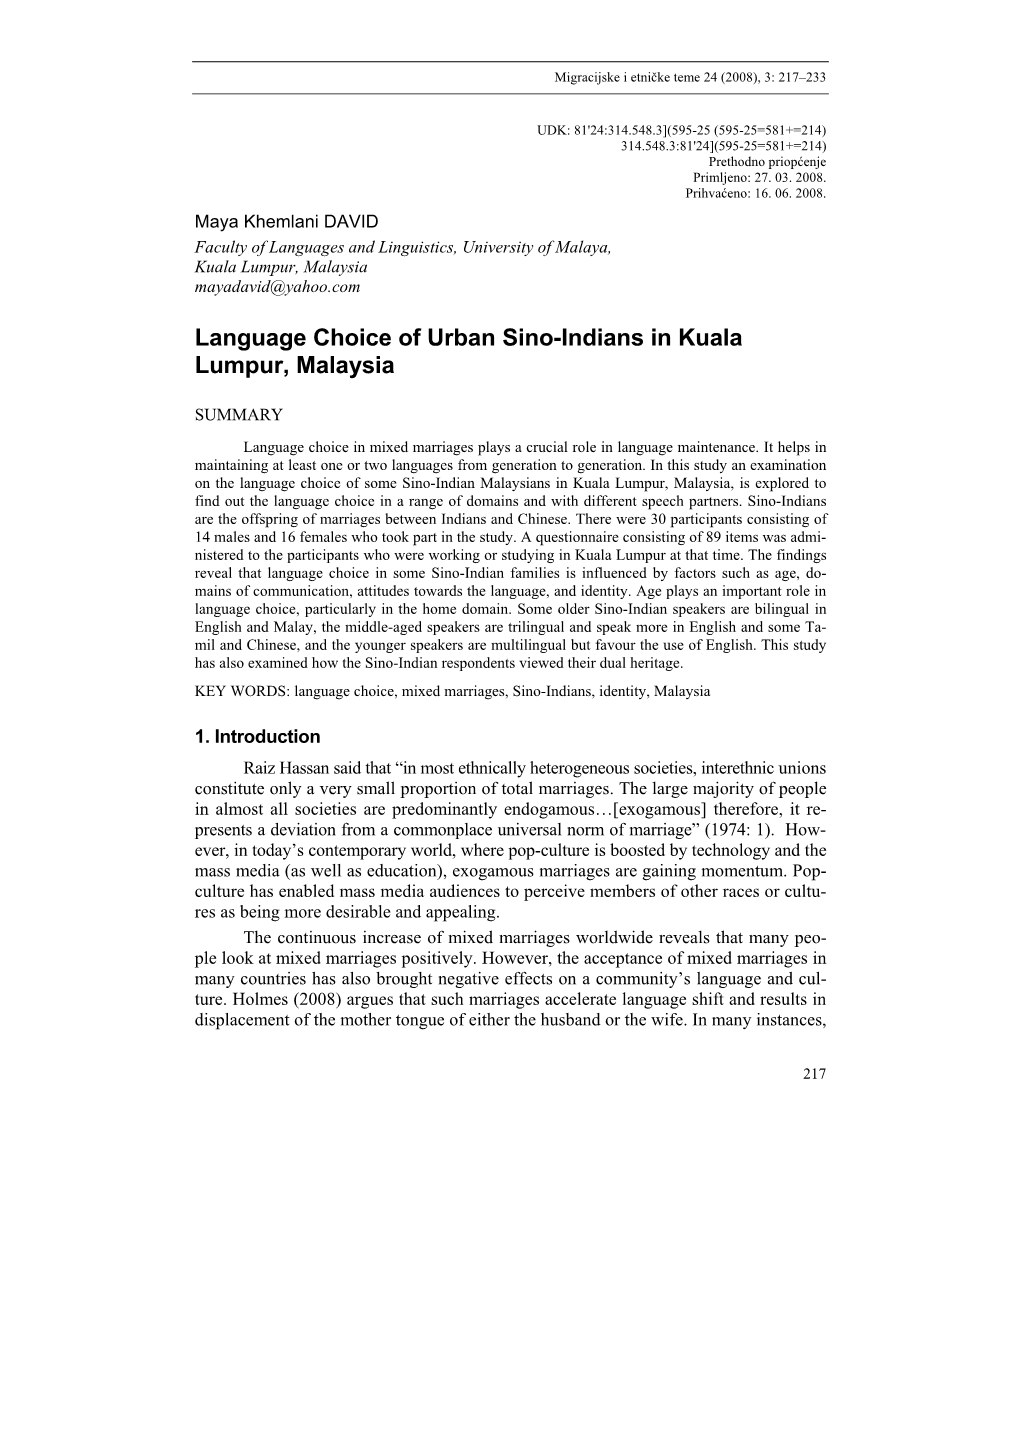 Language Choice of Urban Sino-Indians in Kuala Lumpur, Malaysia